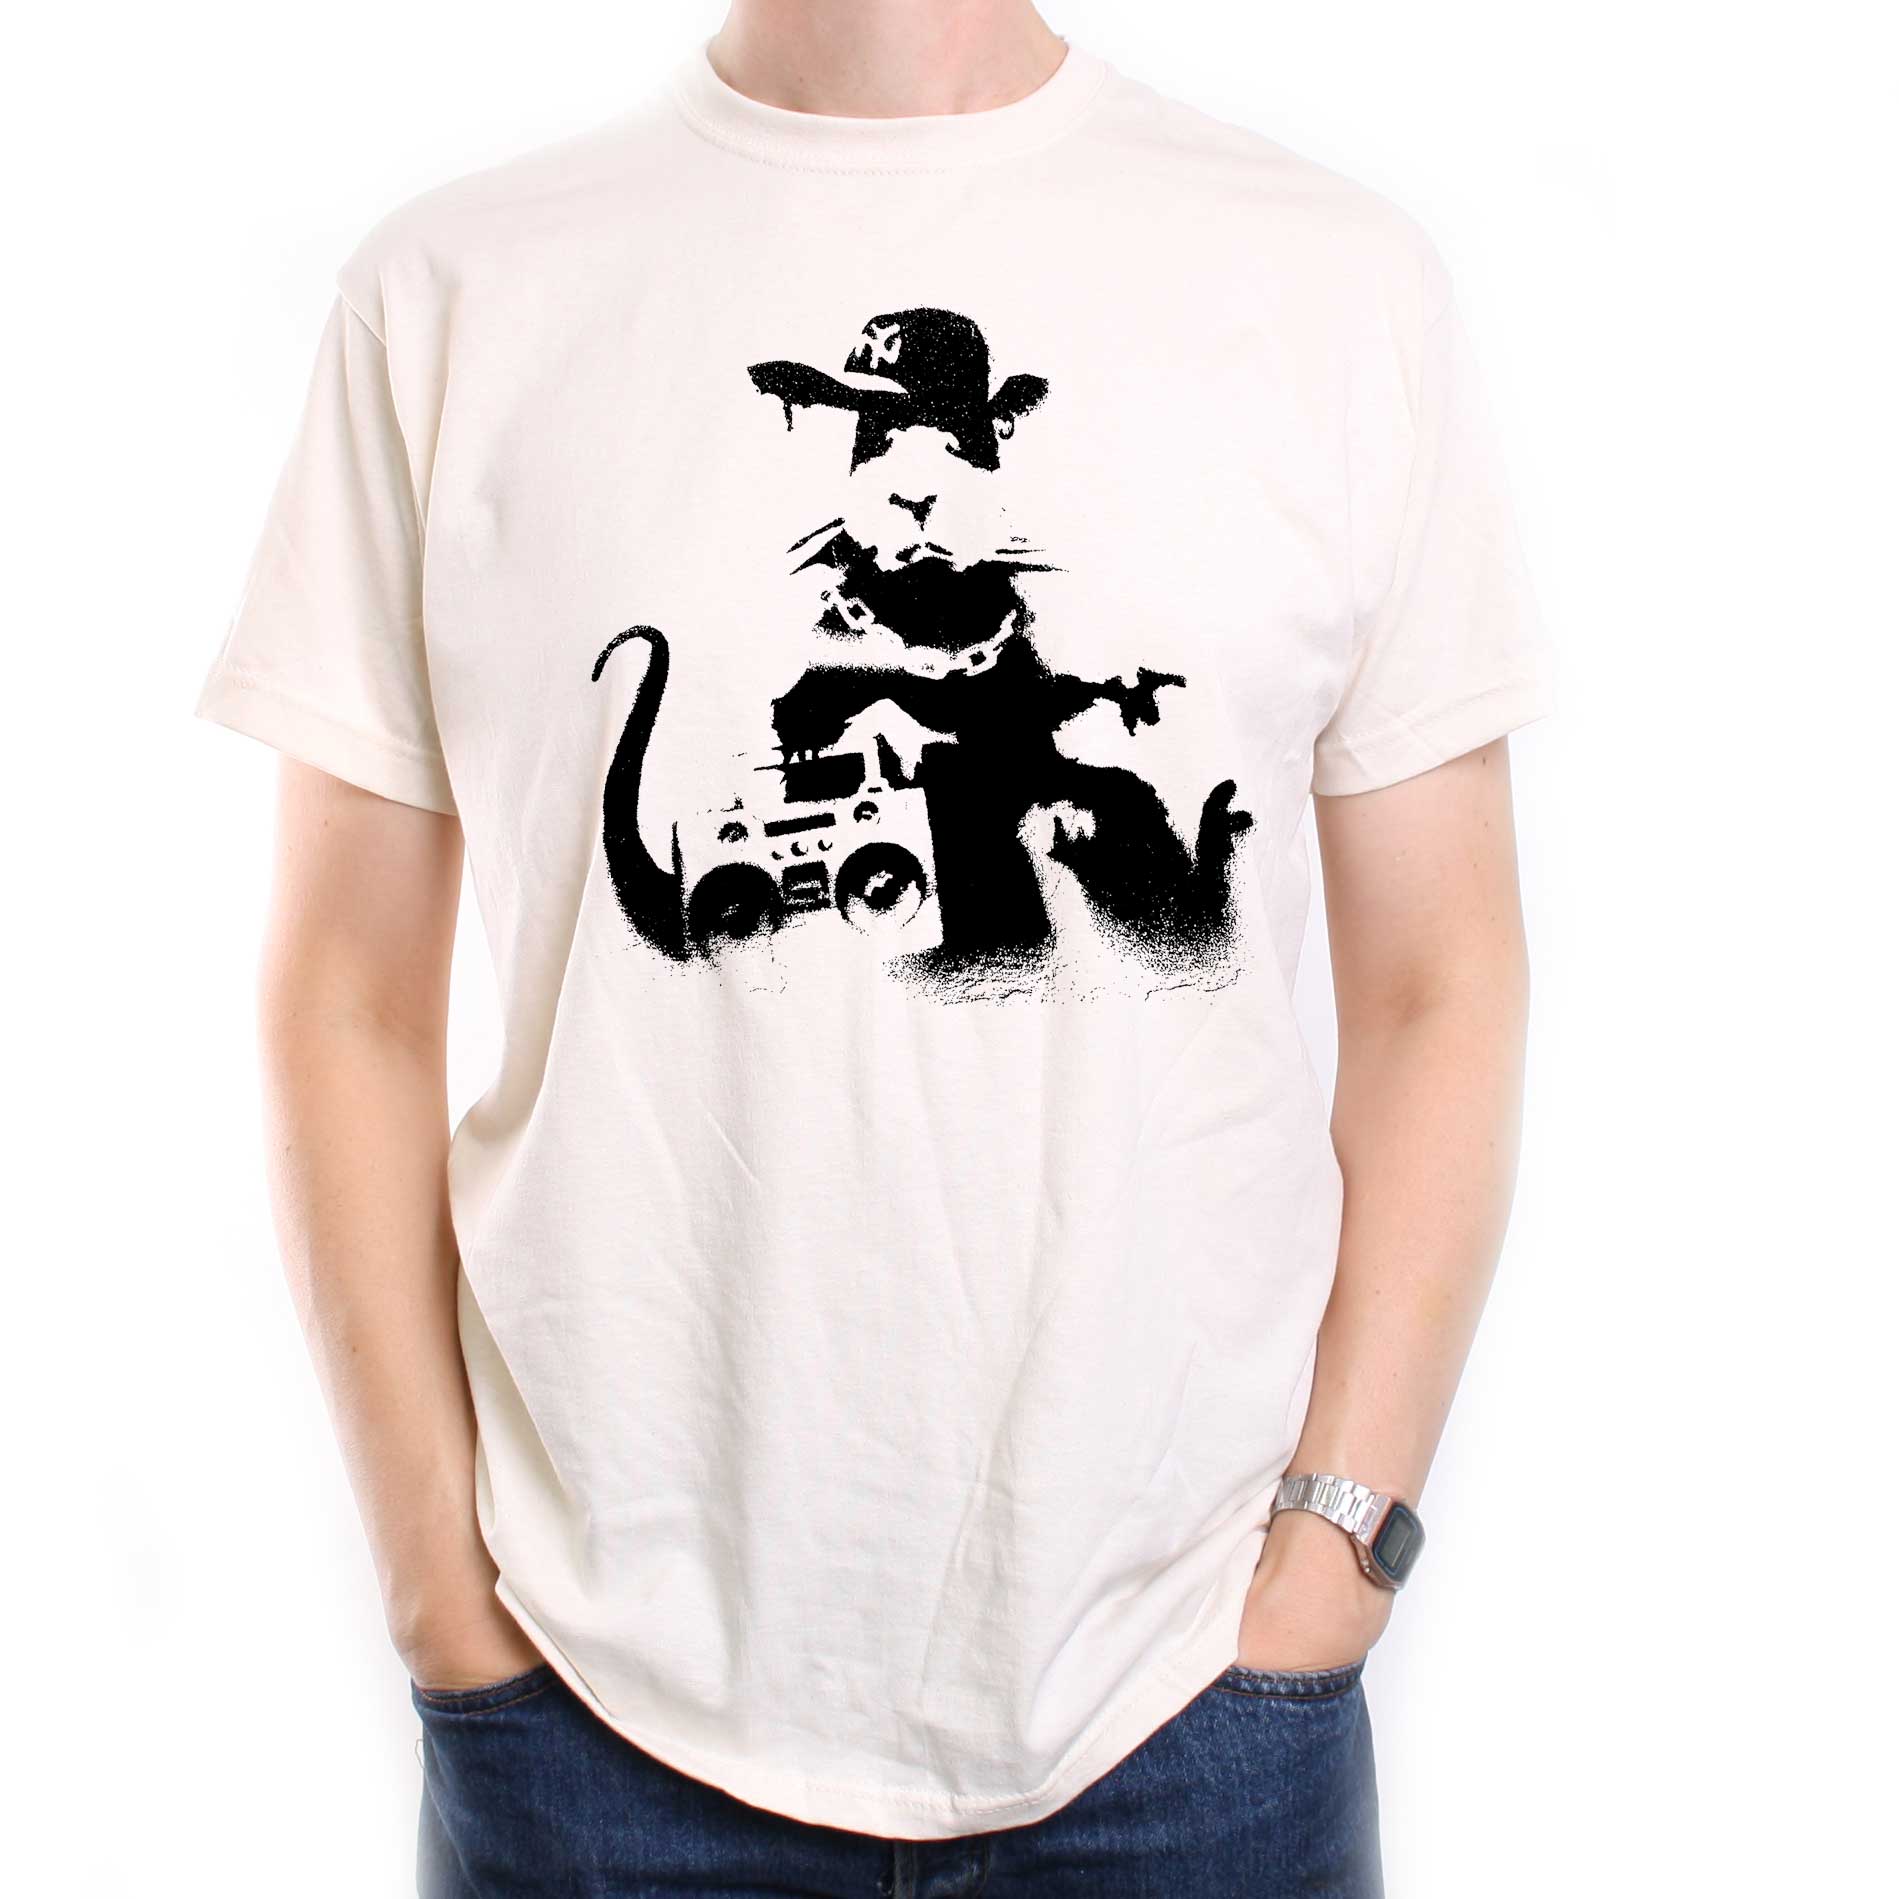 smugling unse Danser Banksy T Shirt - Rat Rapper | Banksy T Shirts from Old Skool Hooligans